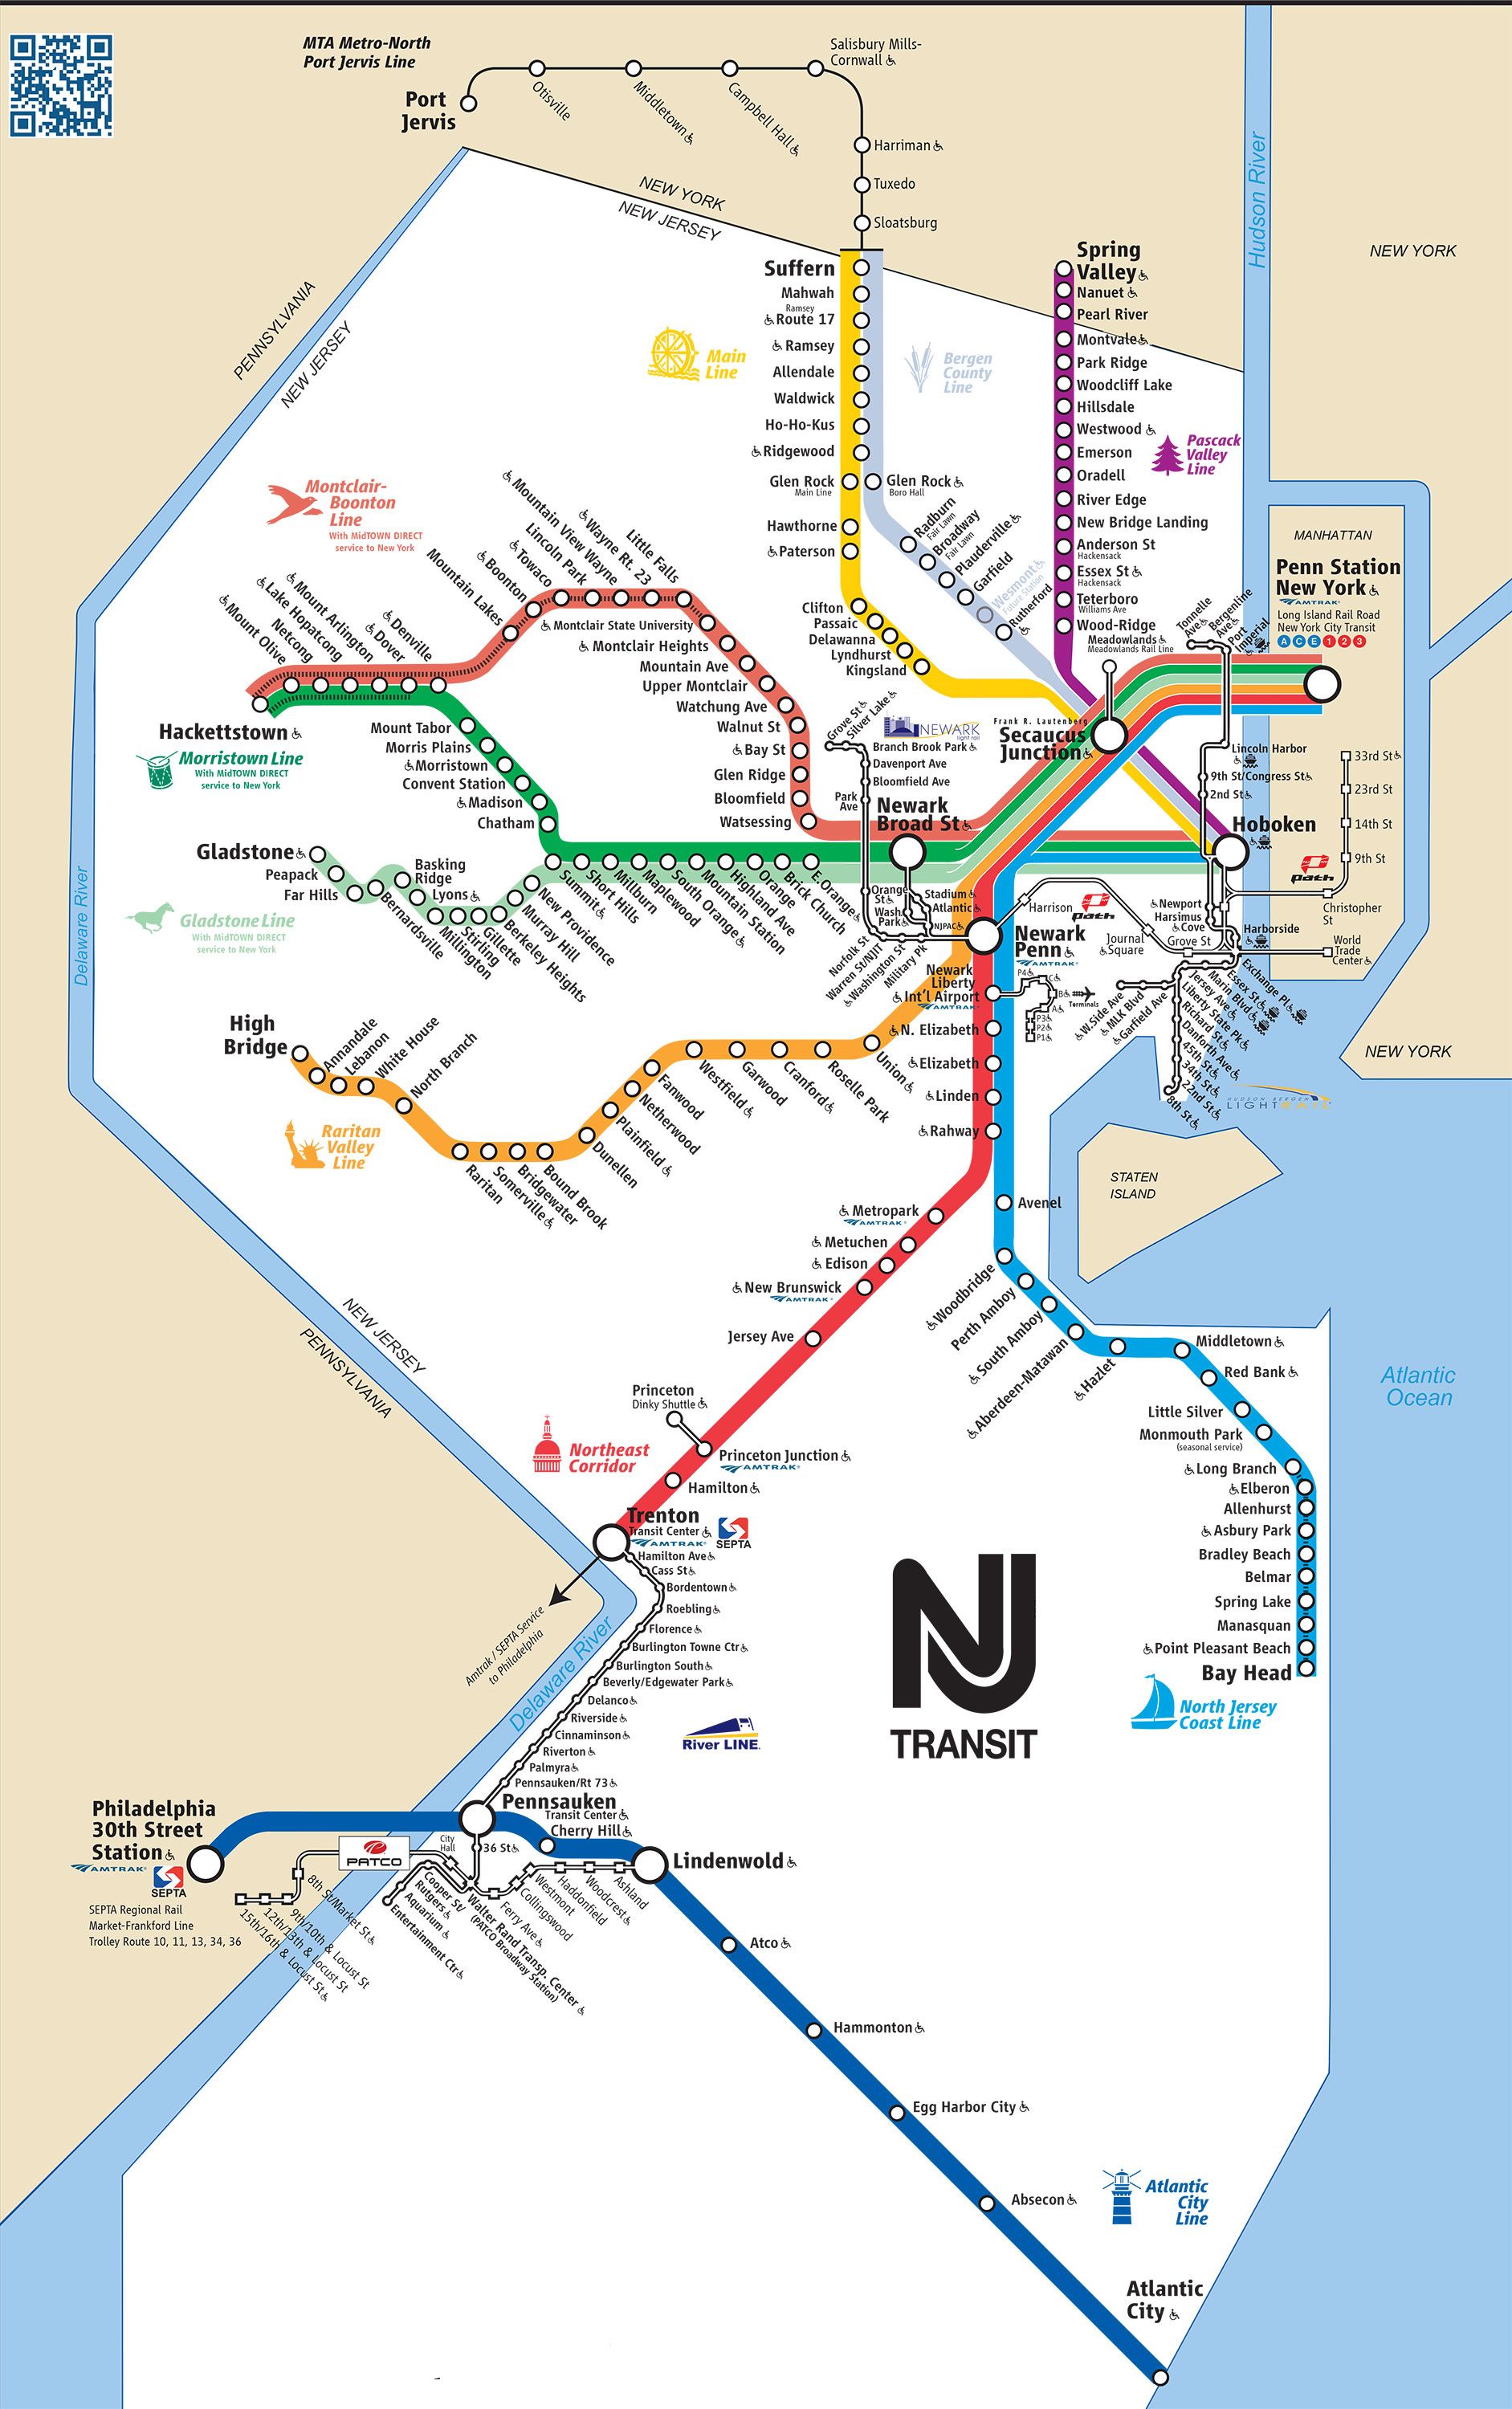 nj-transit-163-bus-schedule-pdf-images-pinpodcast